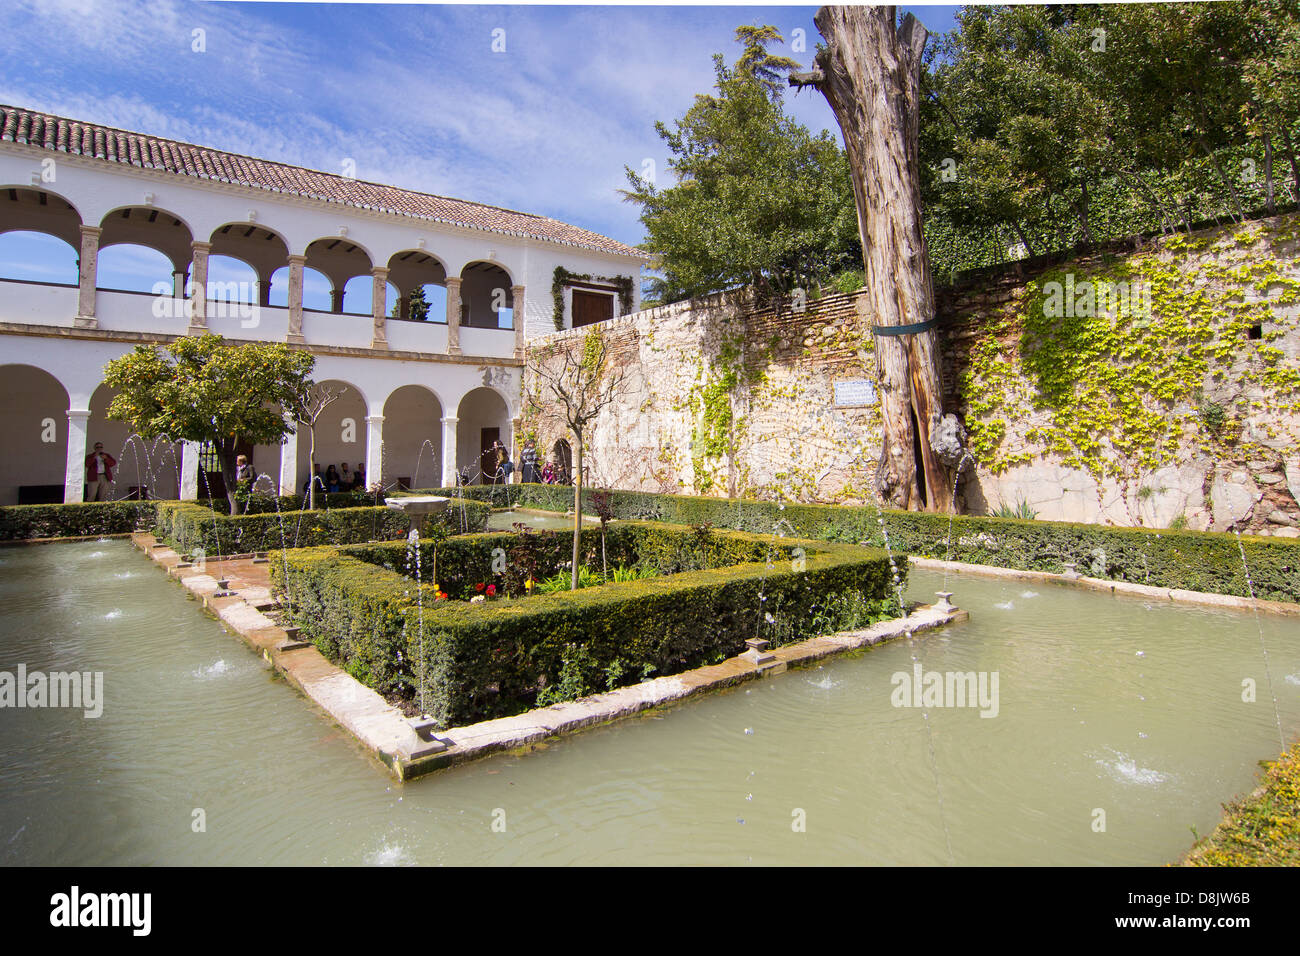 Fountains and ornamental garden in the Alhambra - Patio de la Sultana, Generalife. Granada, Spain Stock Photo